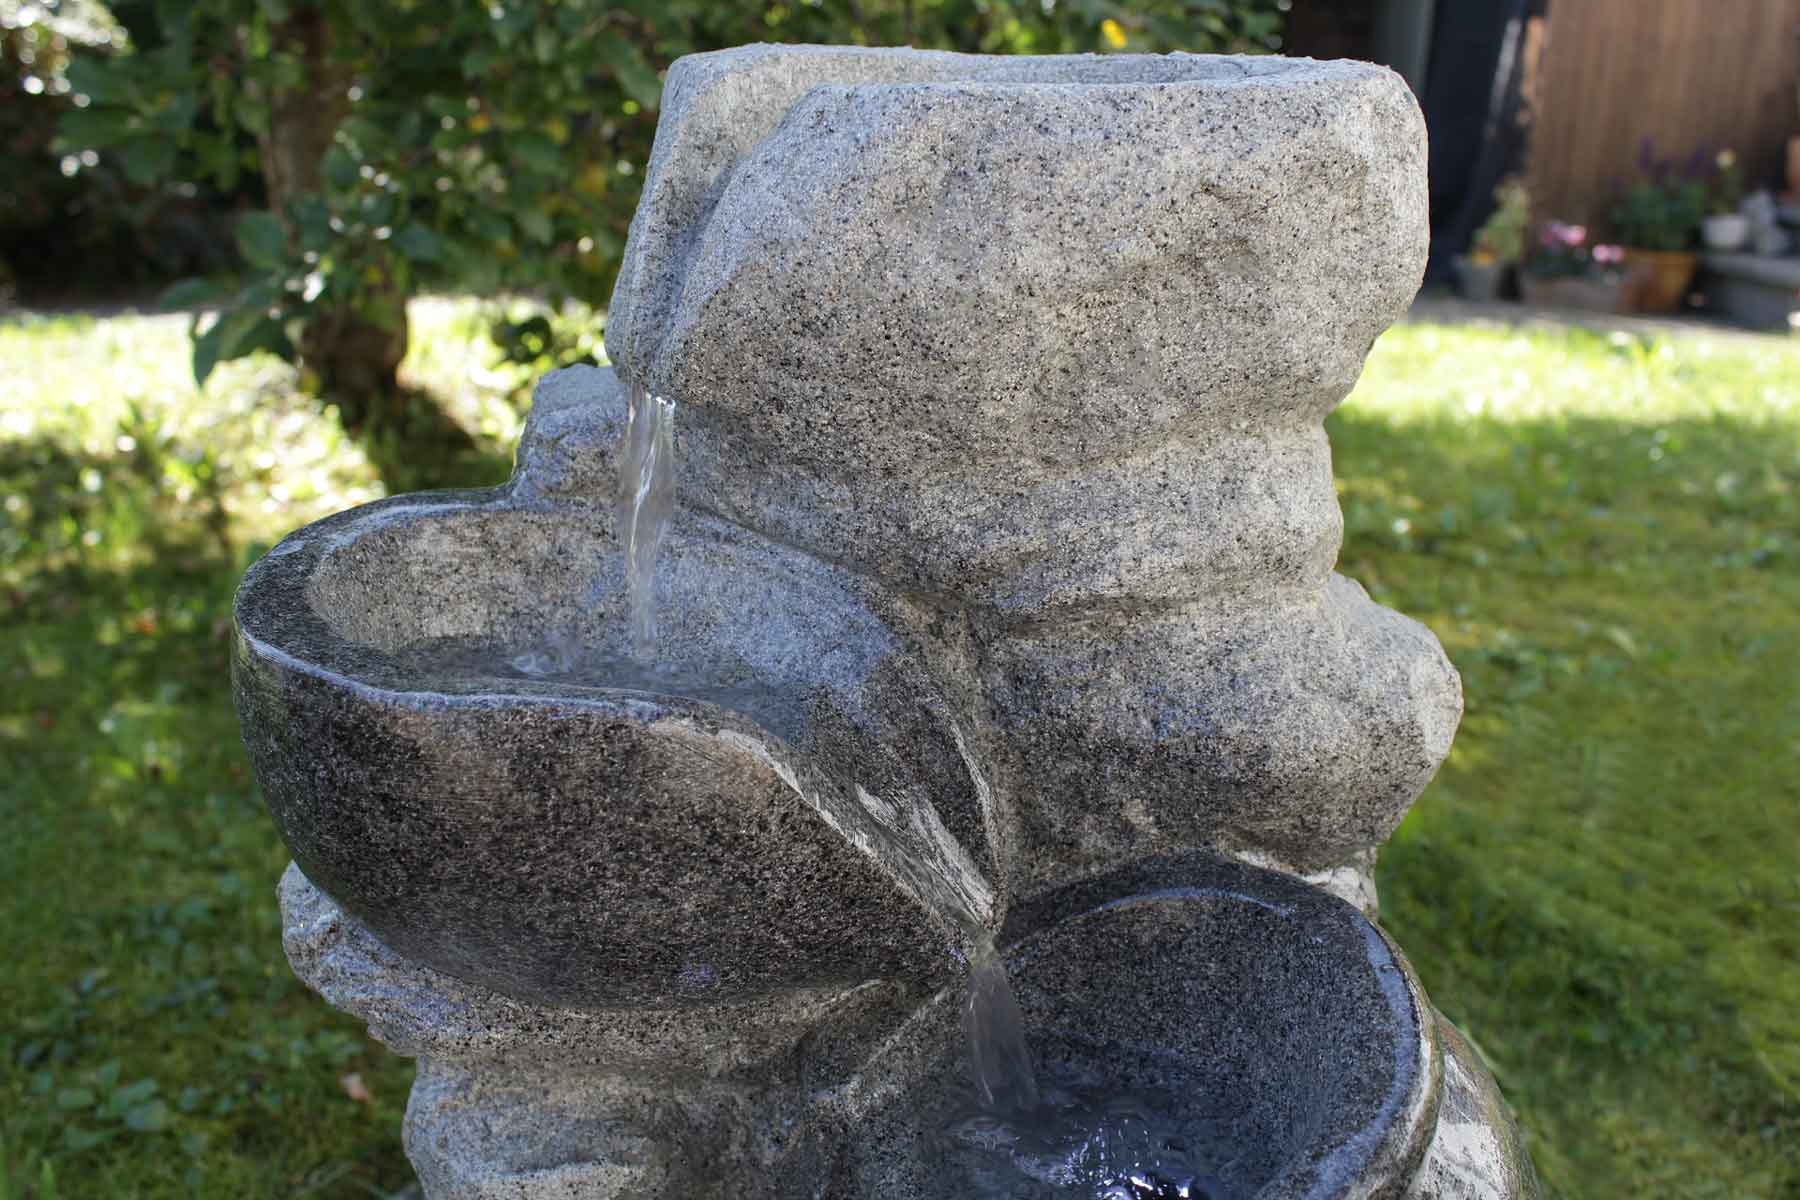 Gartenbrunnen FoArenaria tageslichtweiß Led KIOM 10899 cm 69